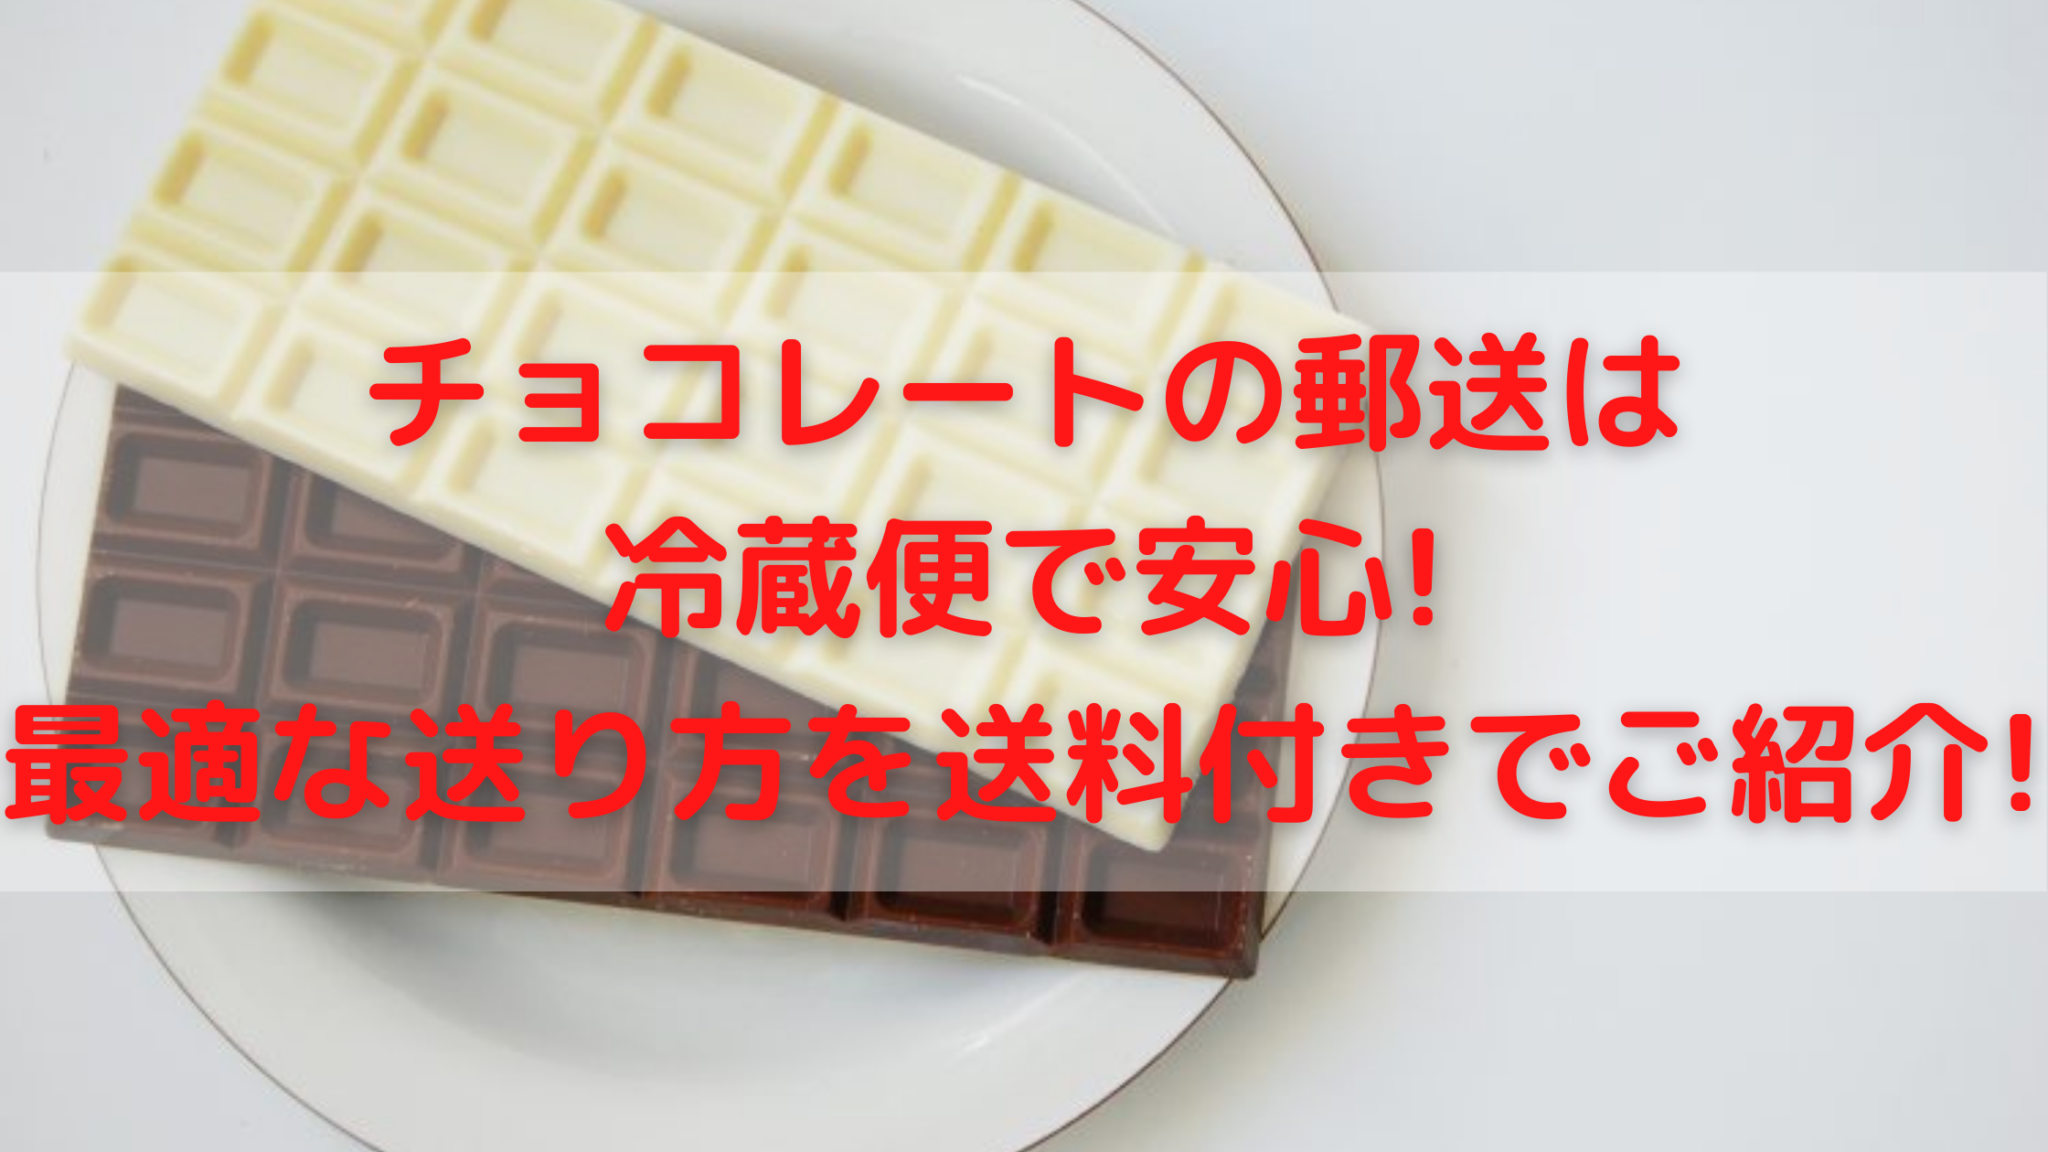 チョコレートの郵送は冷蔵便で安心 最適な送り方を送料付きでご紹介 100点ブログ